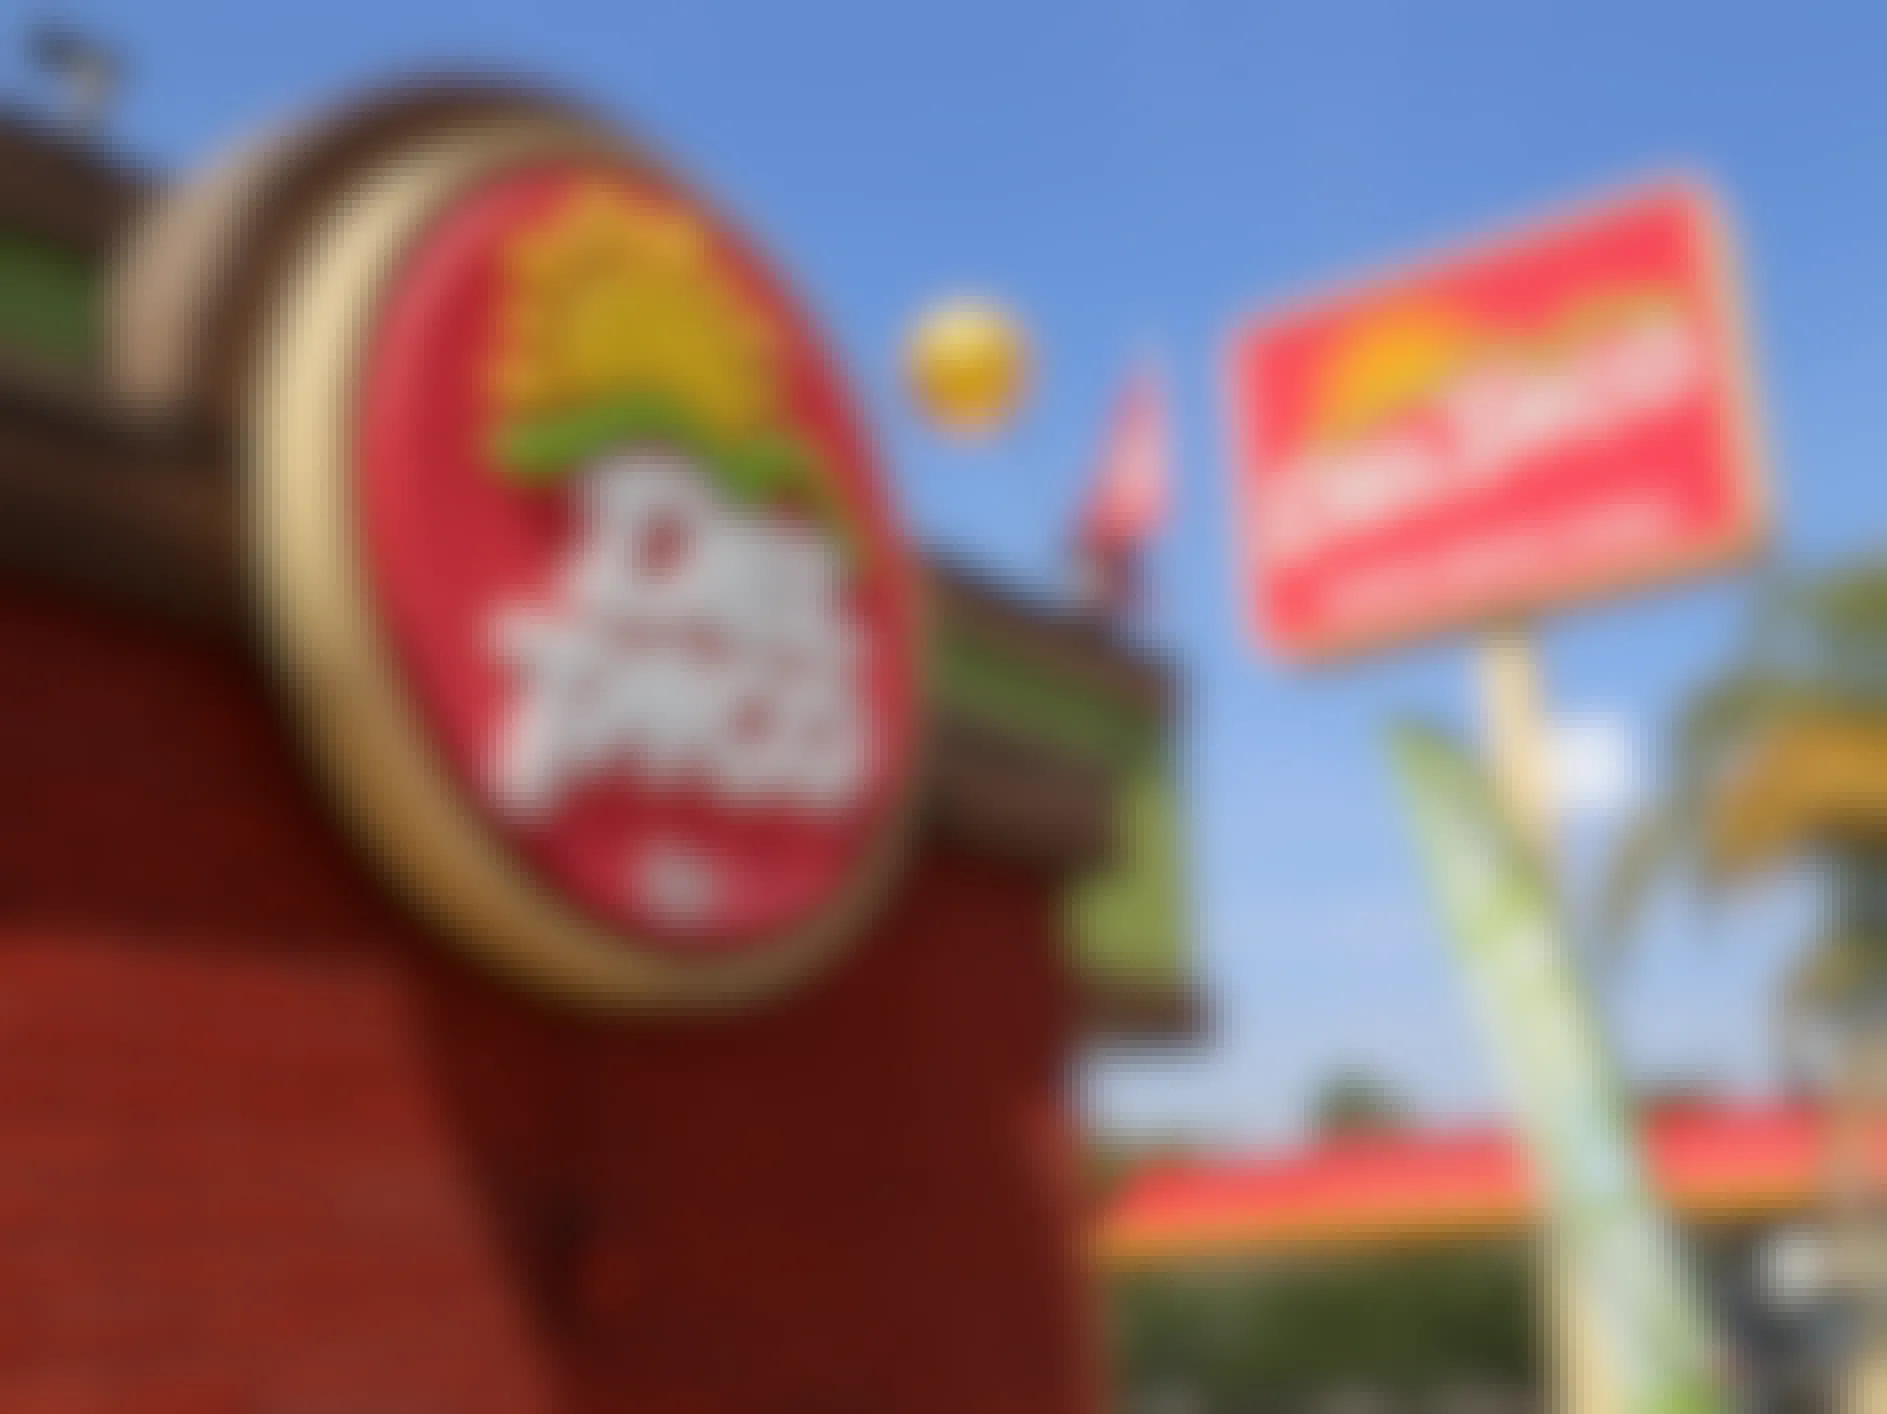 A Del Taco sign and restaurant exterior.